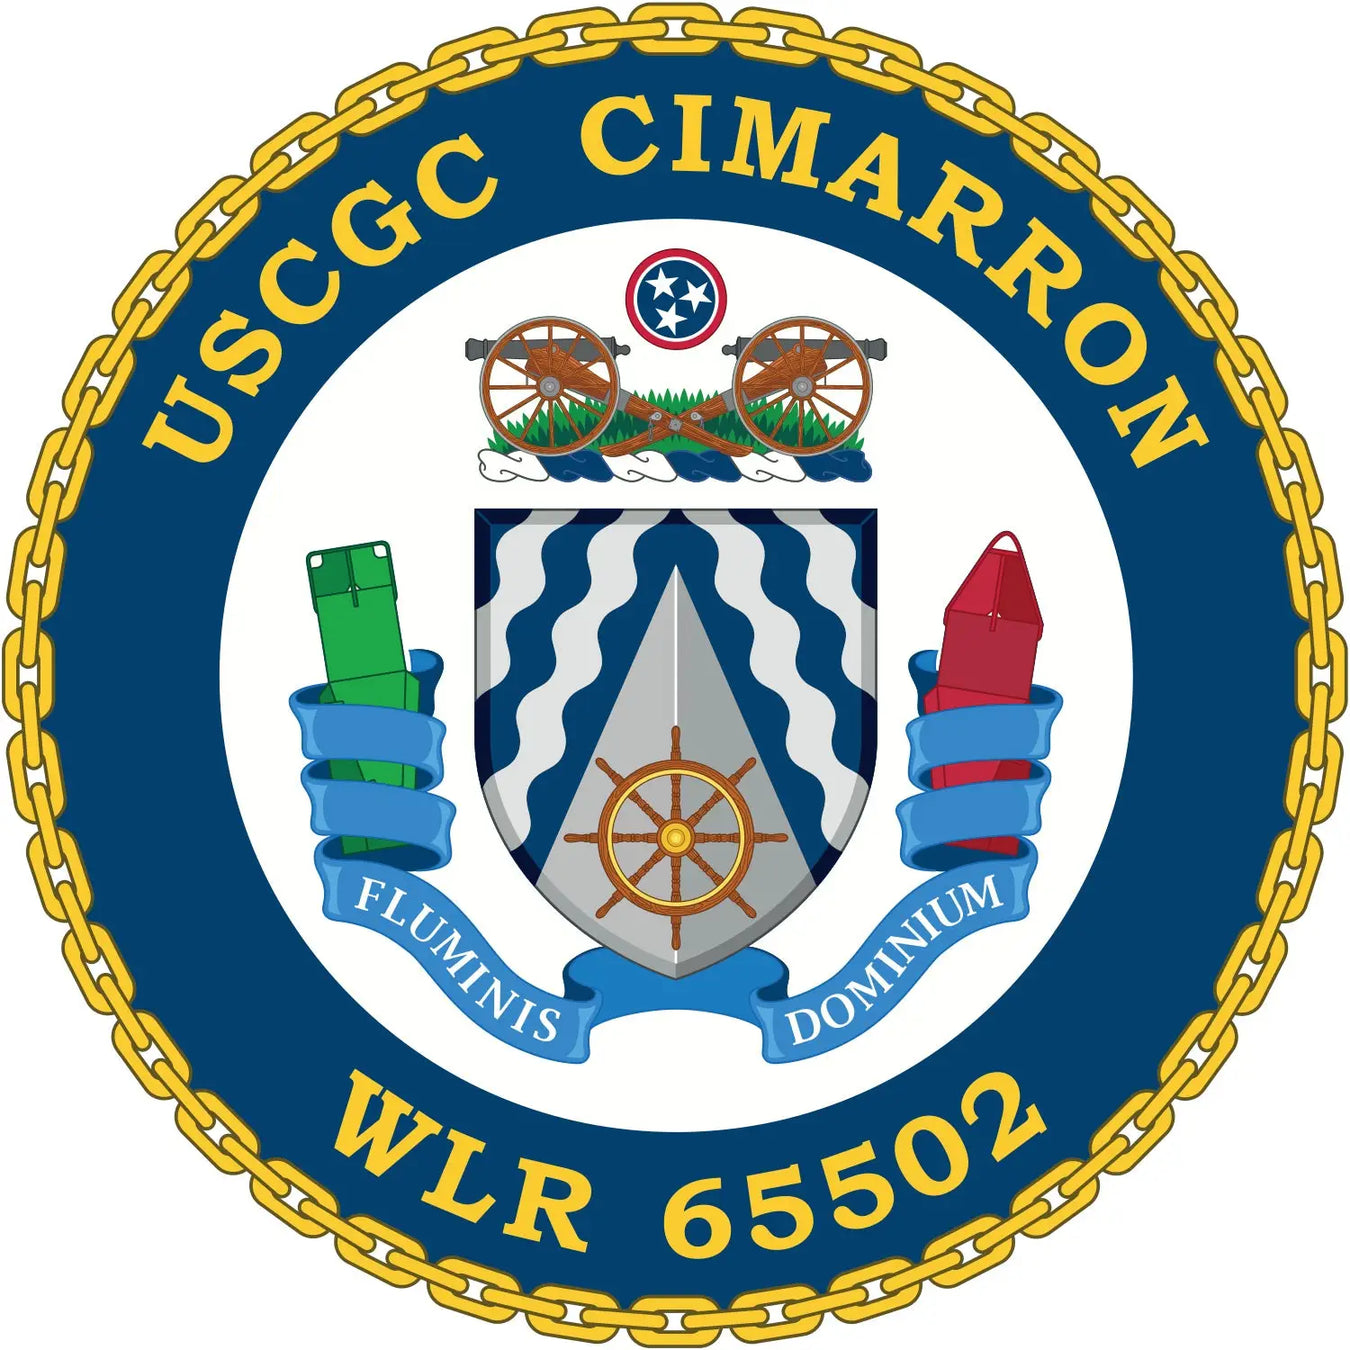 USCGC Cimarron (WLR-65502)